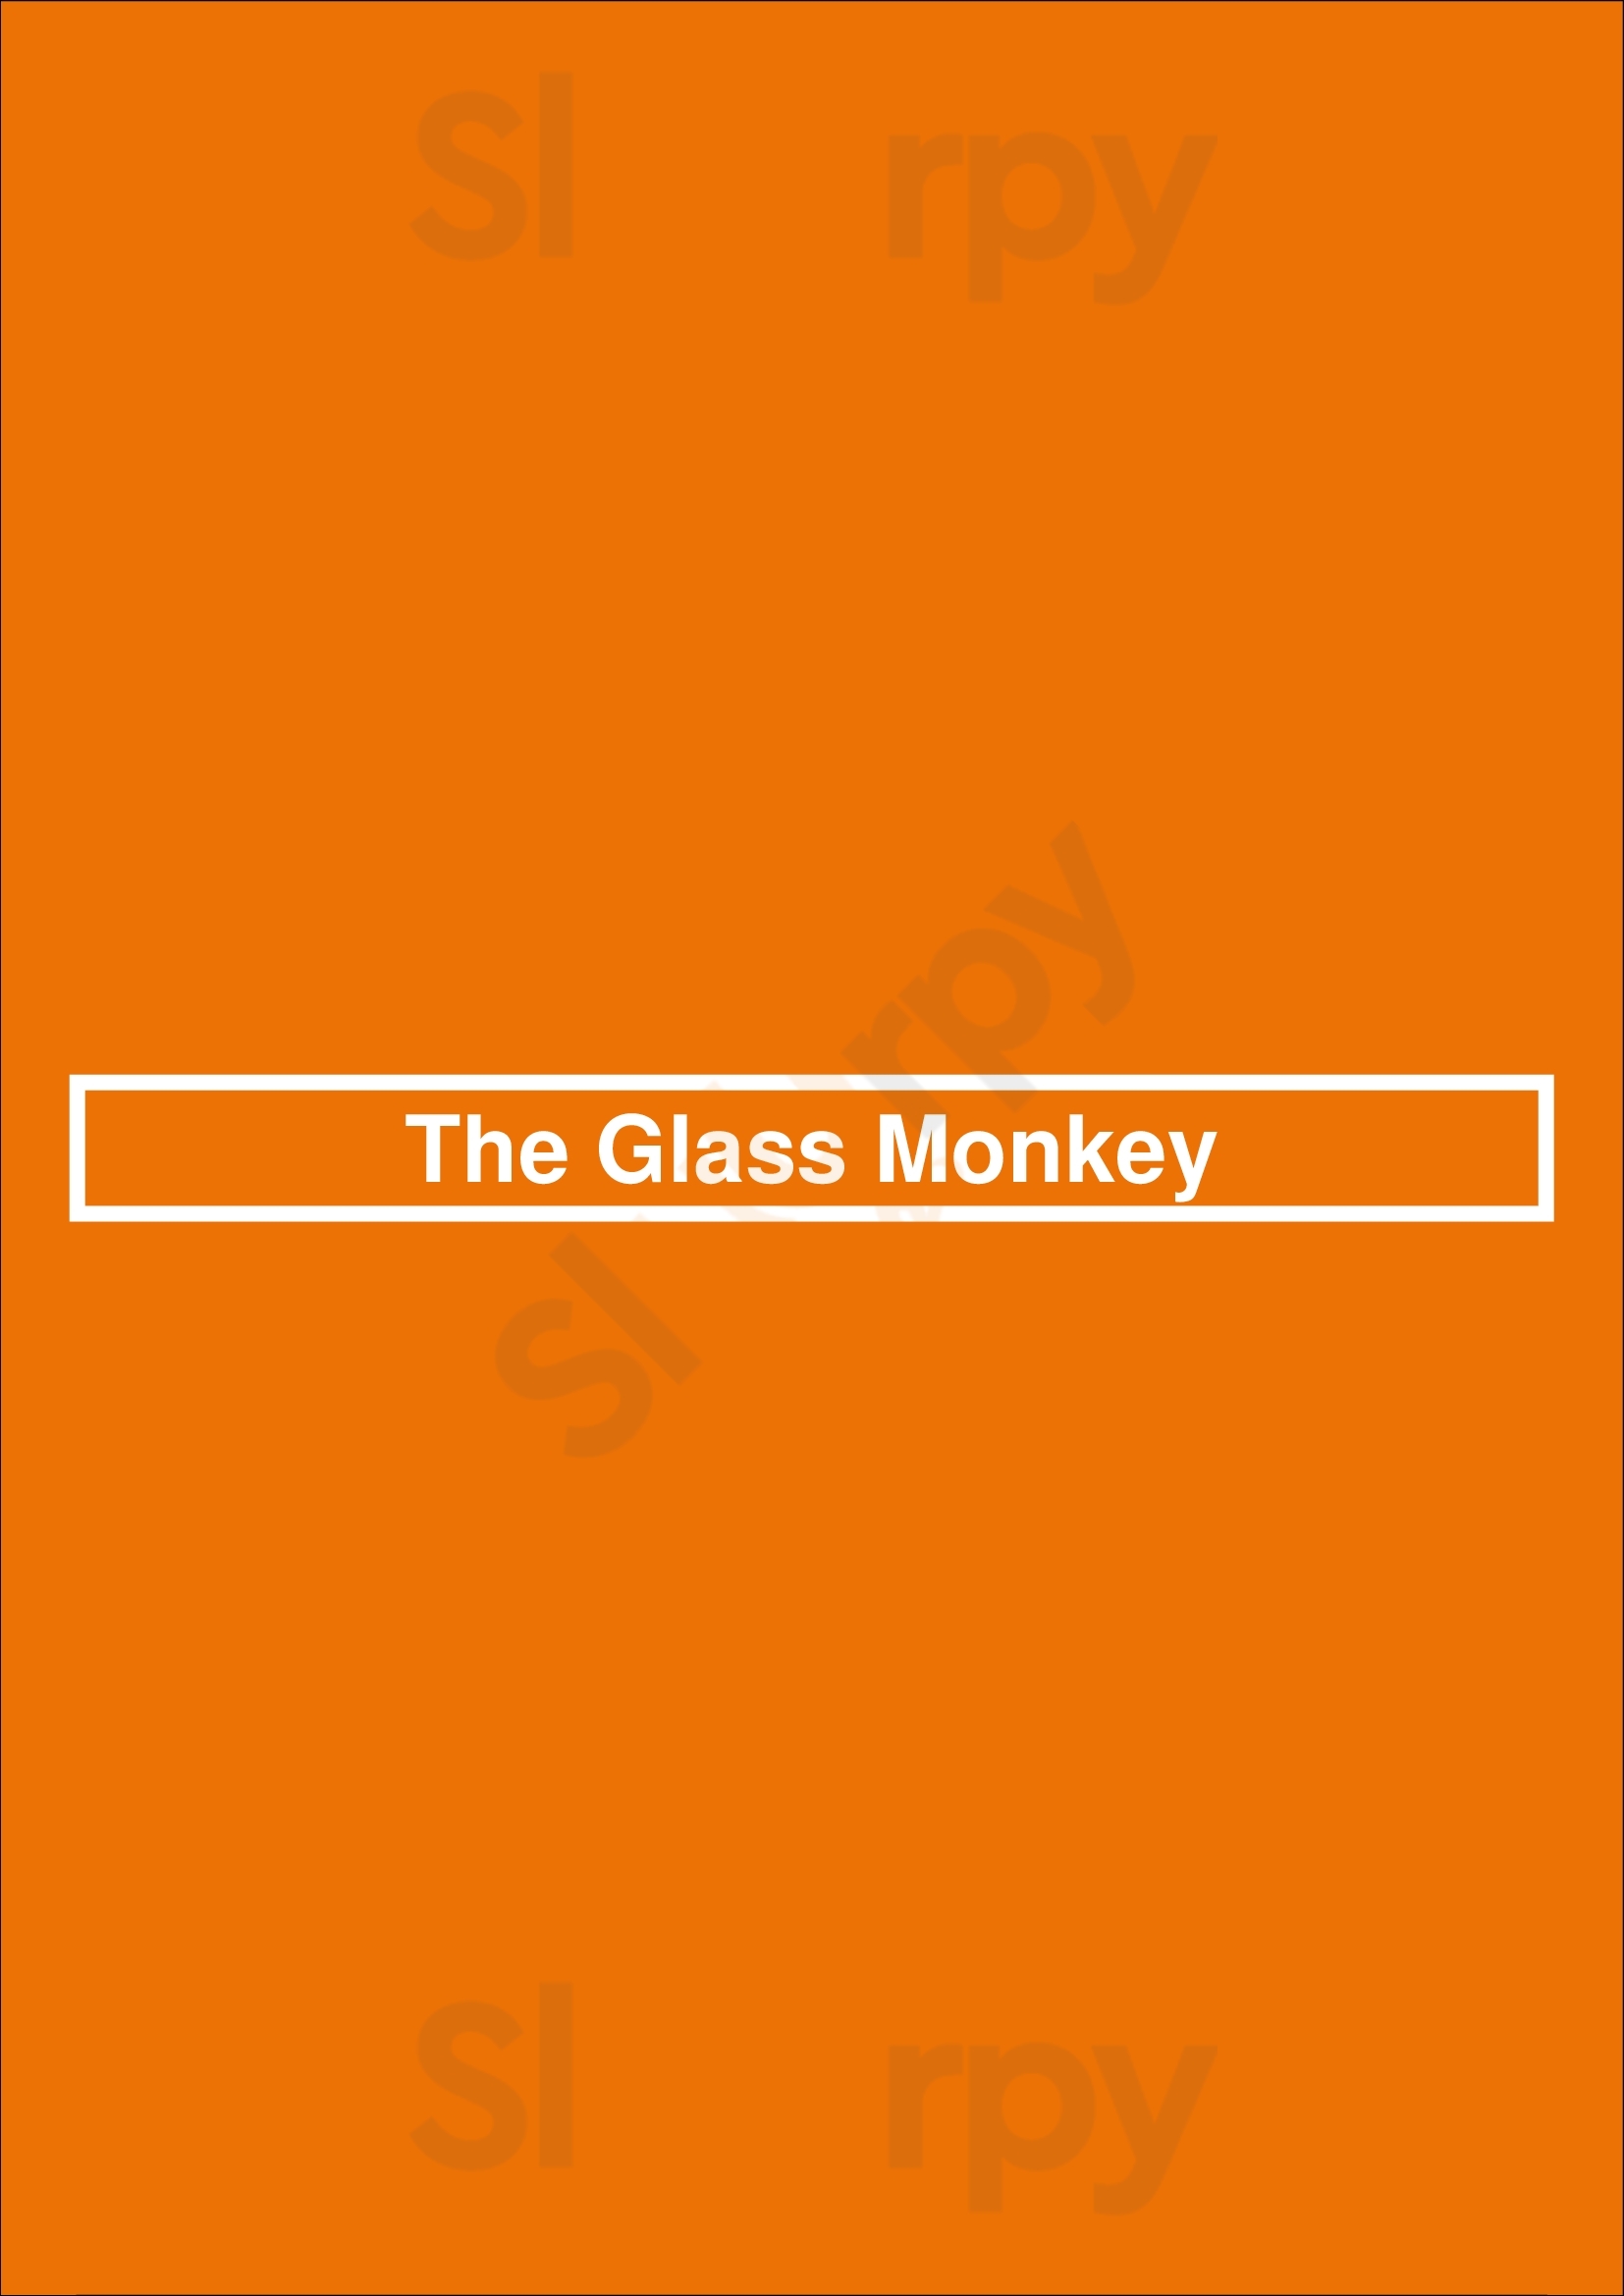 The Glass Monkey Edmonton Menu - 1